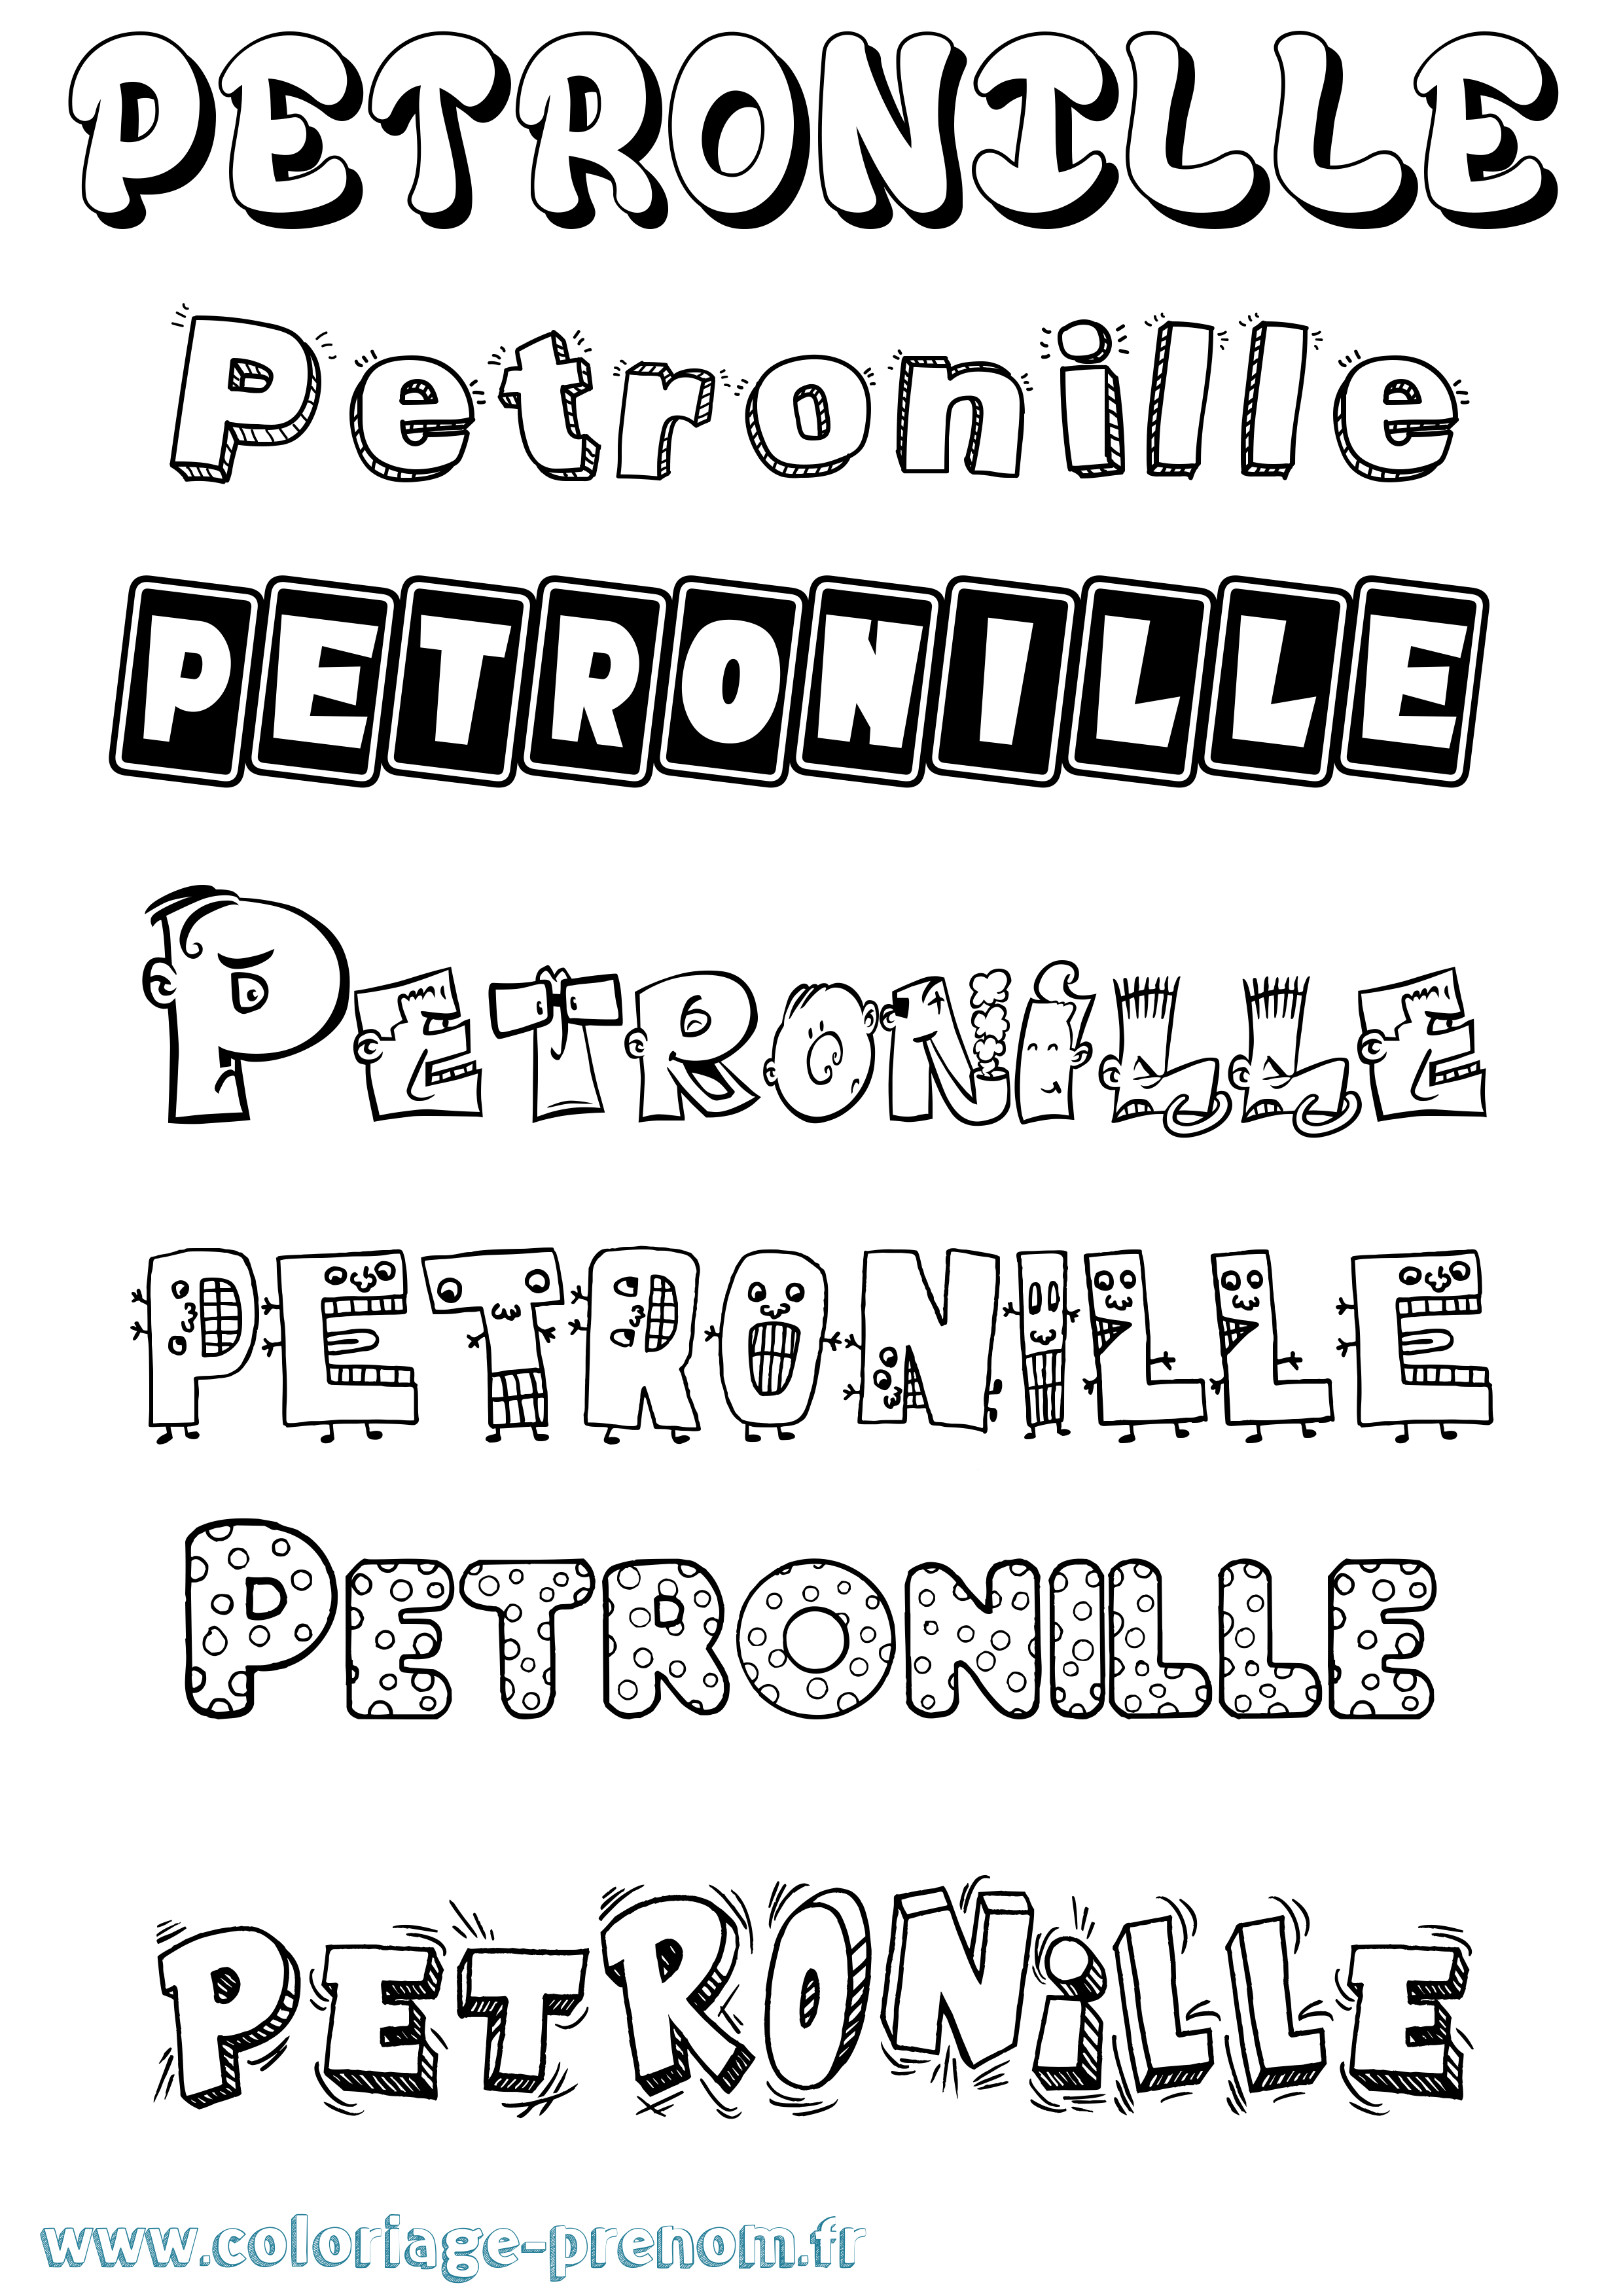 Coloriage prénom Petronille